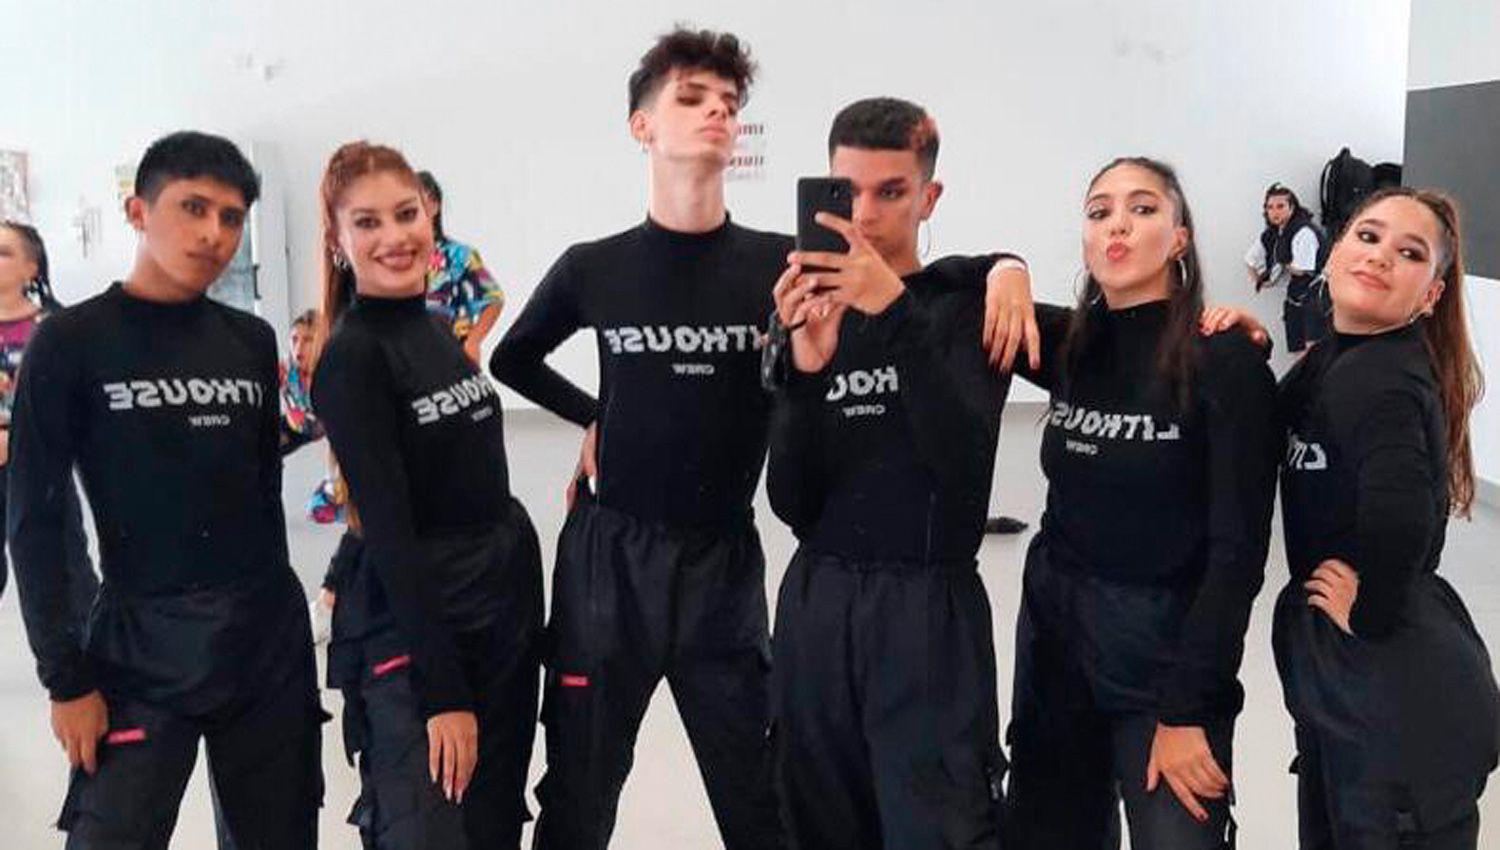 Bailarines santiaguentildeos clasificaron para el mundial de hip hop